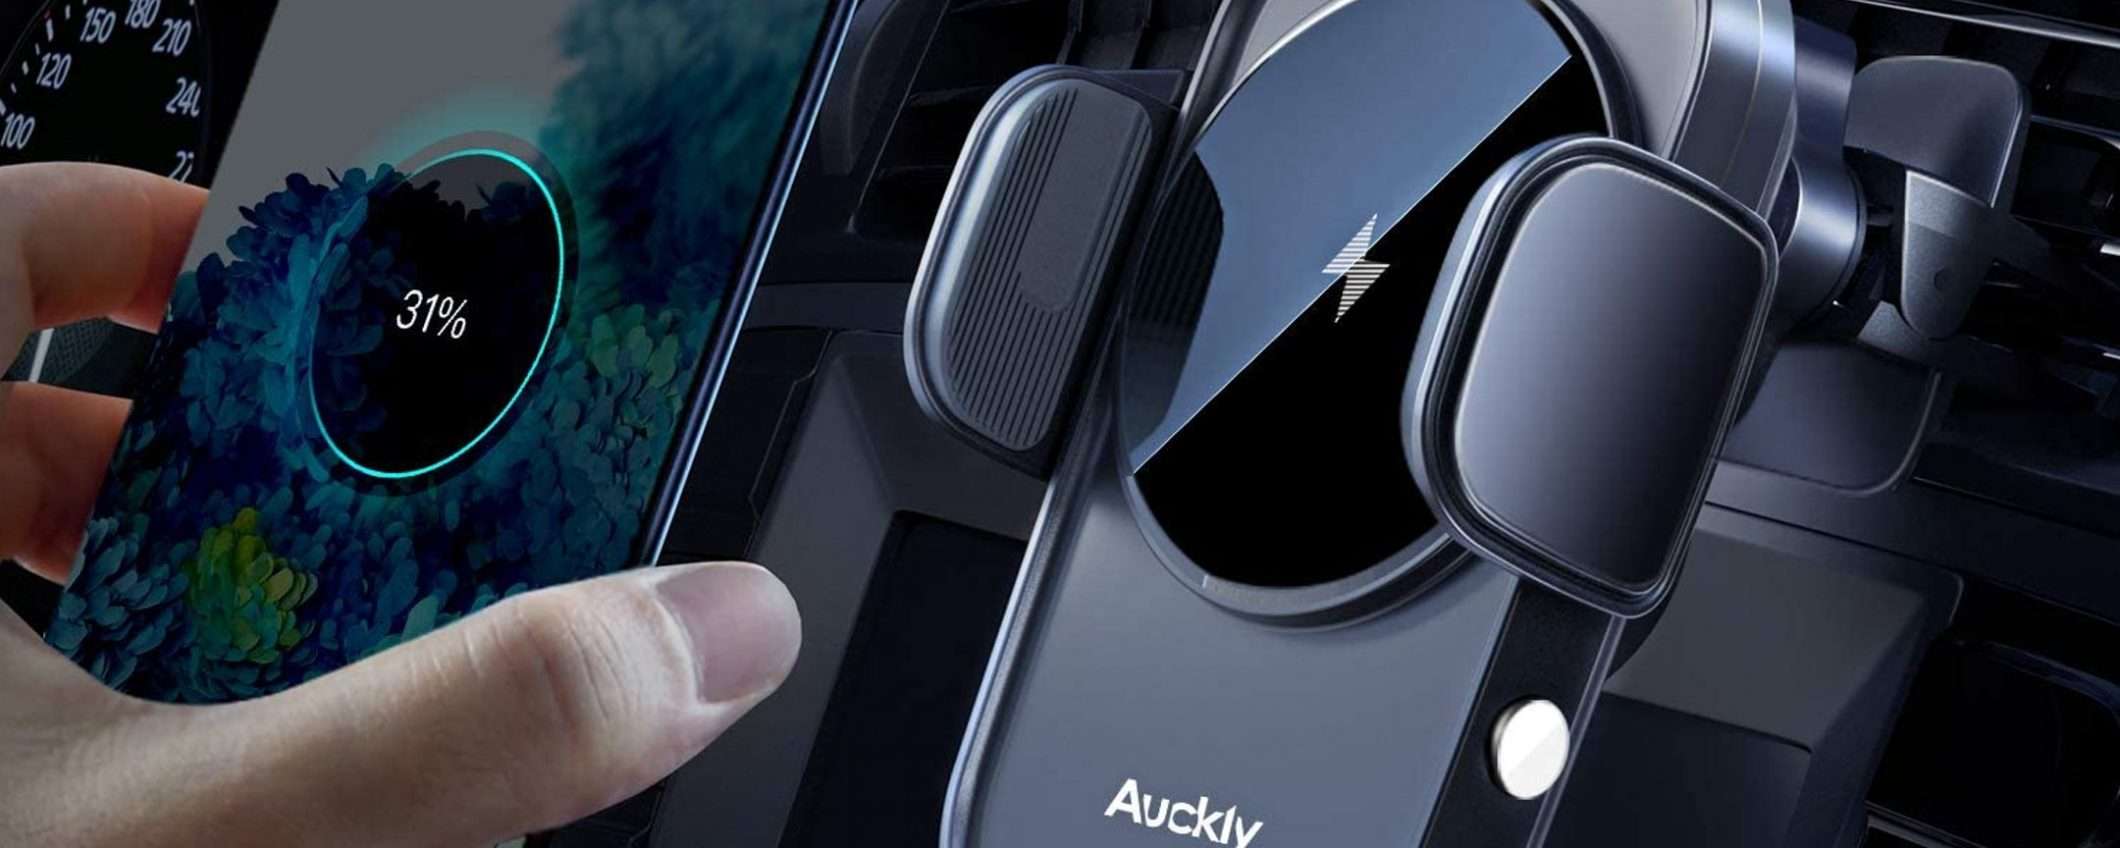 Auckly, il supporto auto con ricarica wireless